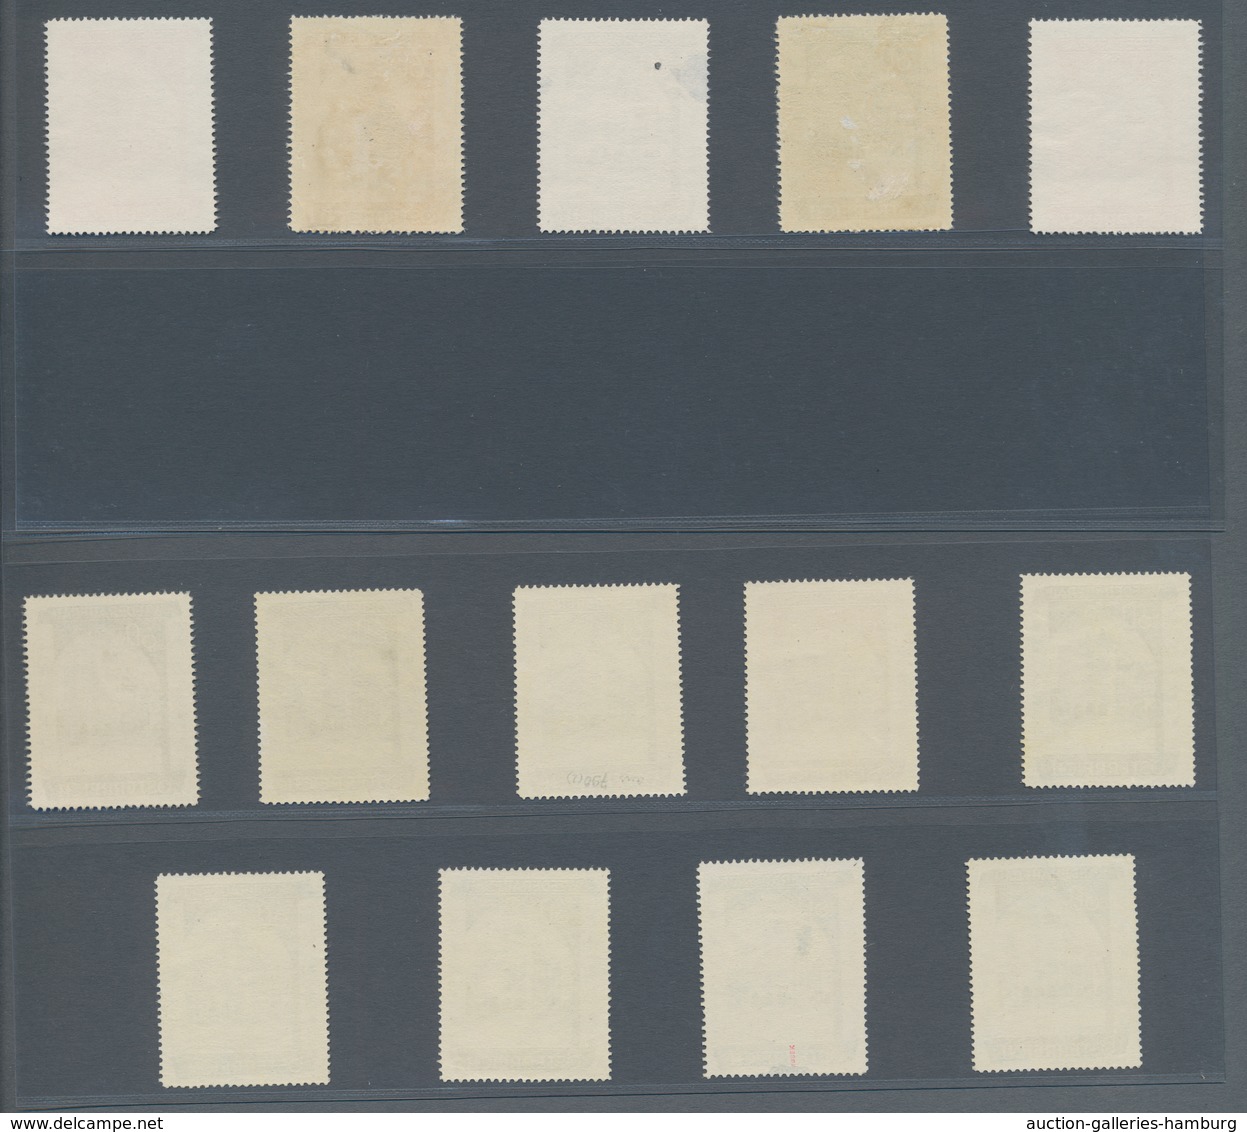 Österreich: 1948, 60 Gr. + 30 Gr. "Wiederaufbau", 14 (meist) verschiedene Farbproben in Linienzähnun